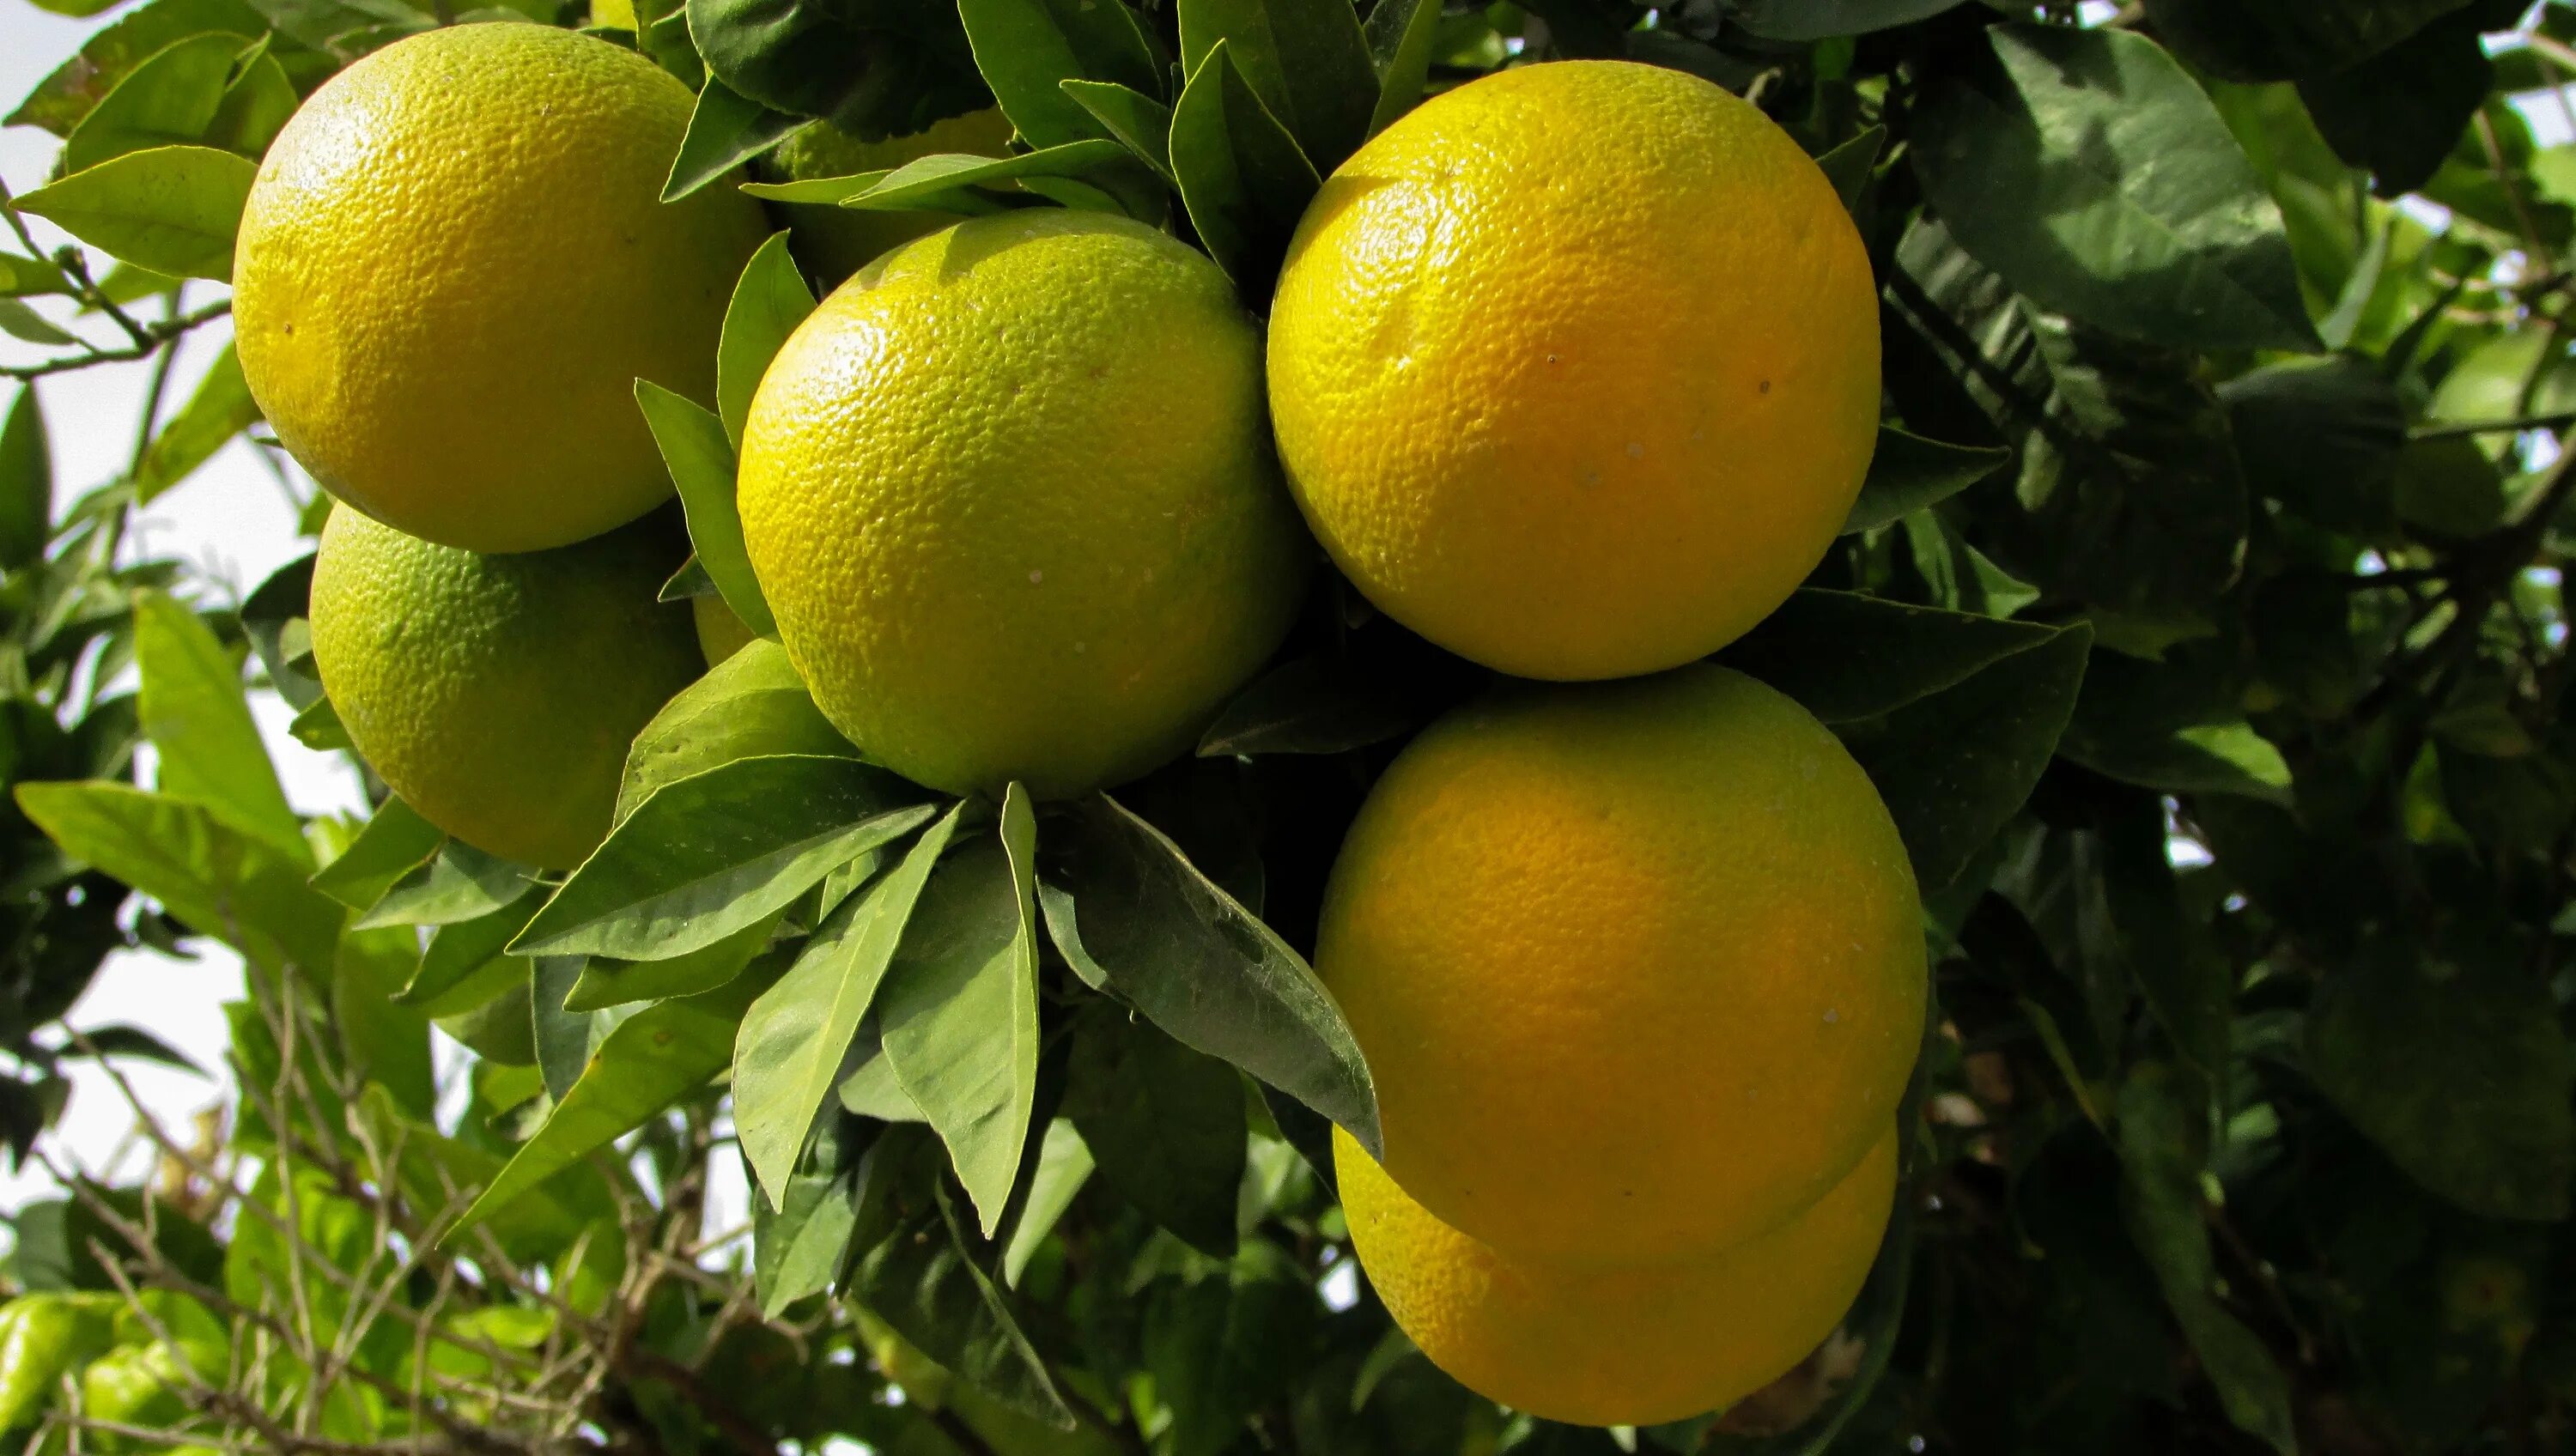 Танжерин Цитрон лайм. Мандарин бергамот. Мандарин лимон бергамот. Лимонное дерево Кипр. Лимон это овощ или ягода